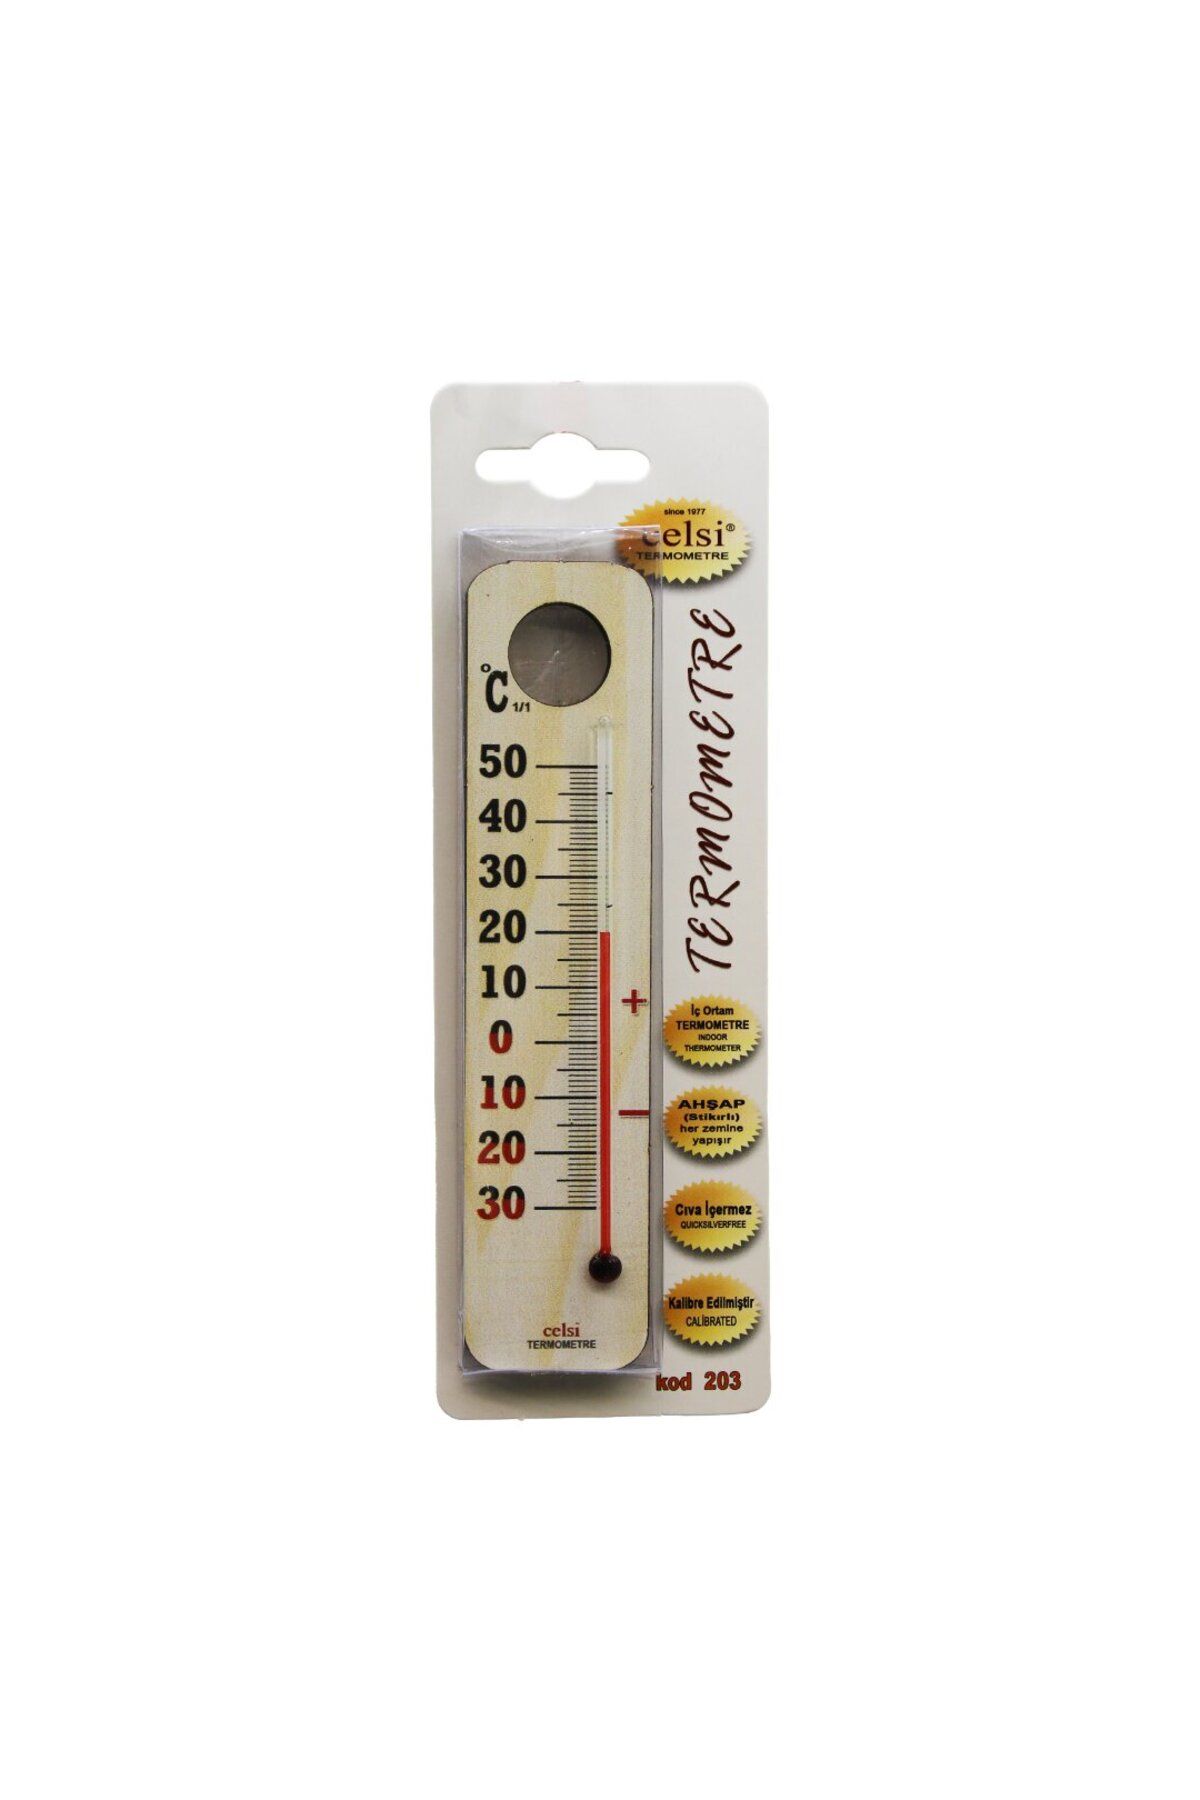 Genel Markalar Ahşap Mini Derece Oda Termometresi